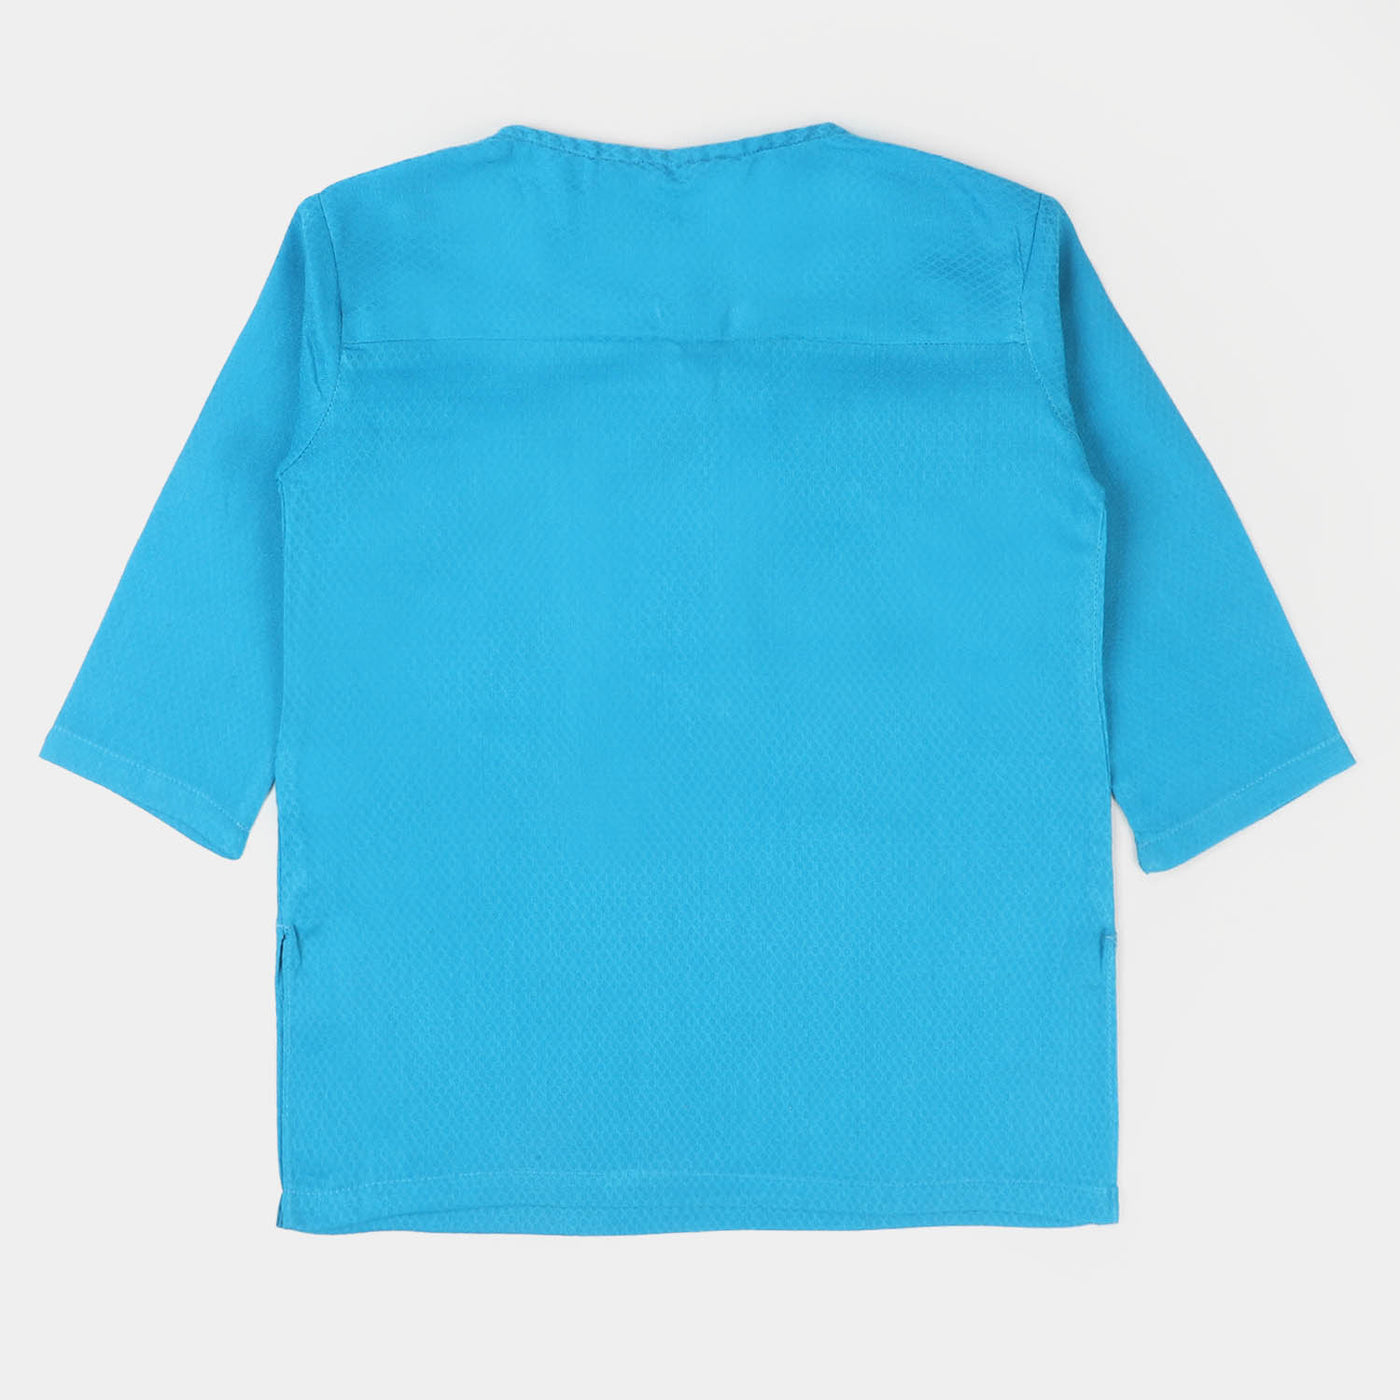 Infant Boys Cotton Basic Kurta - Turquoise